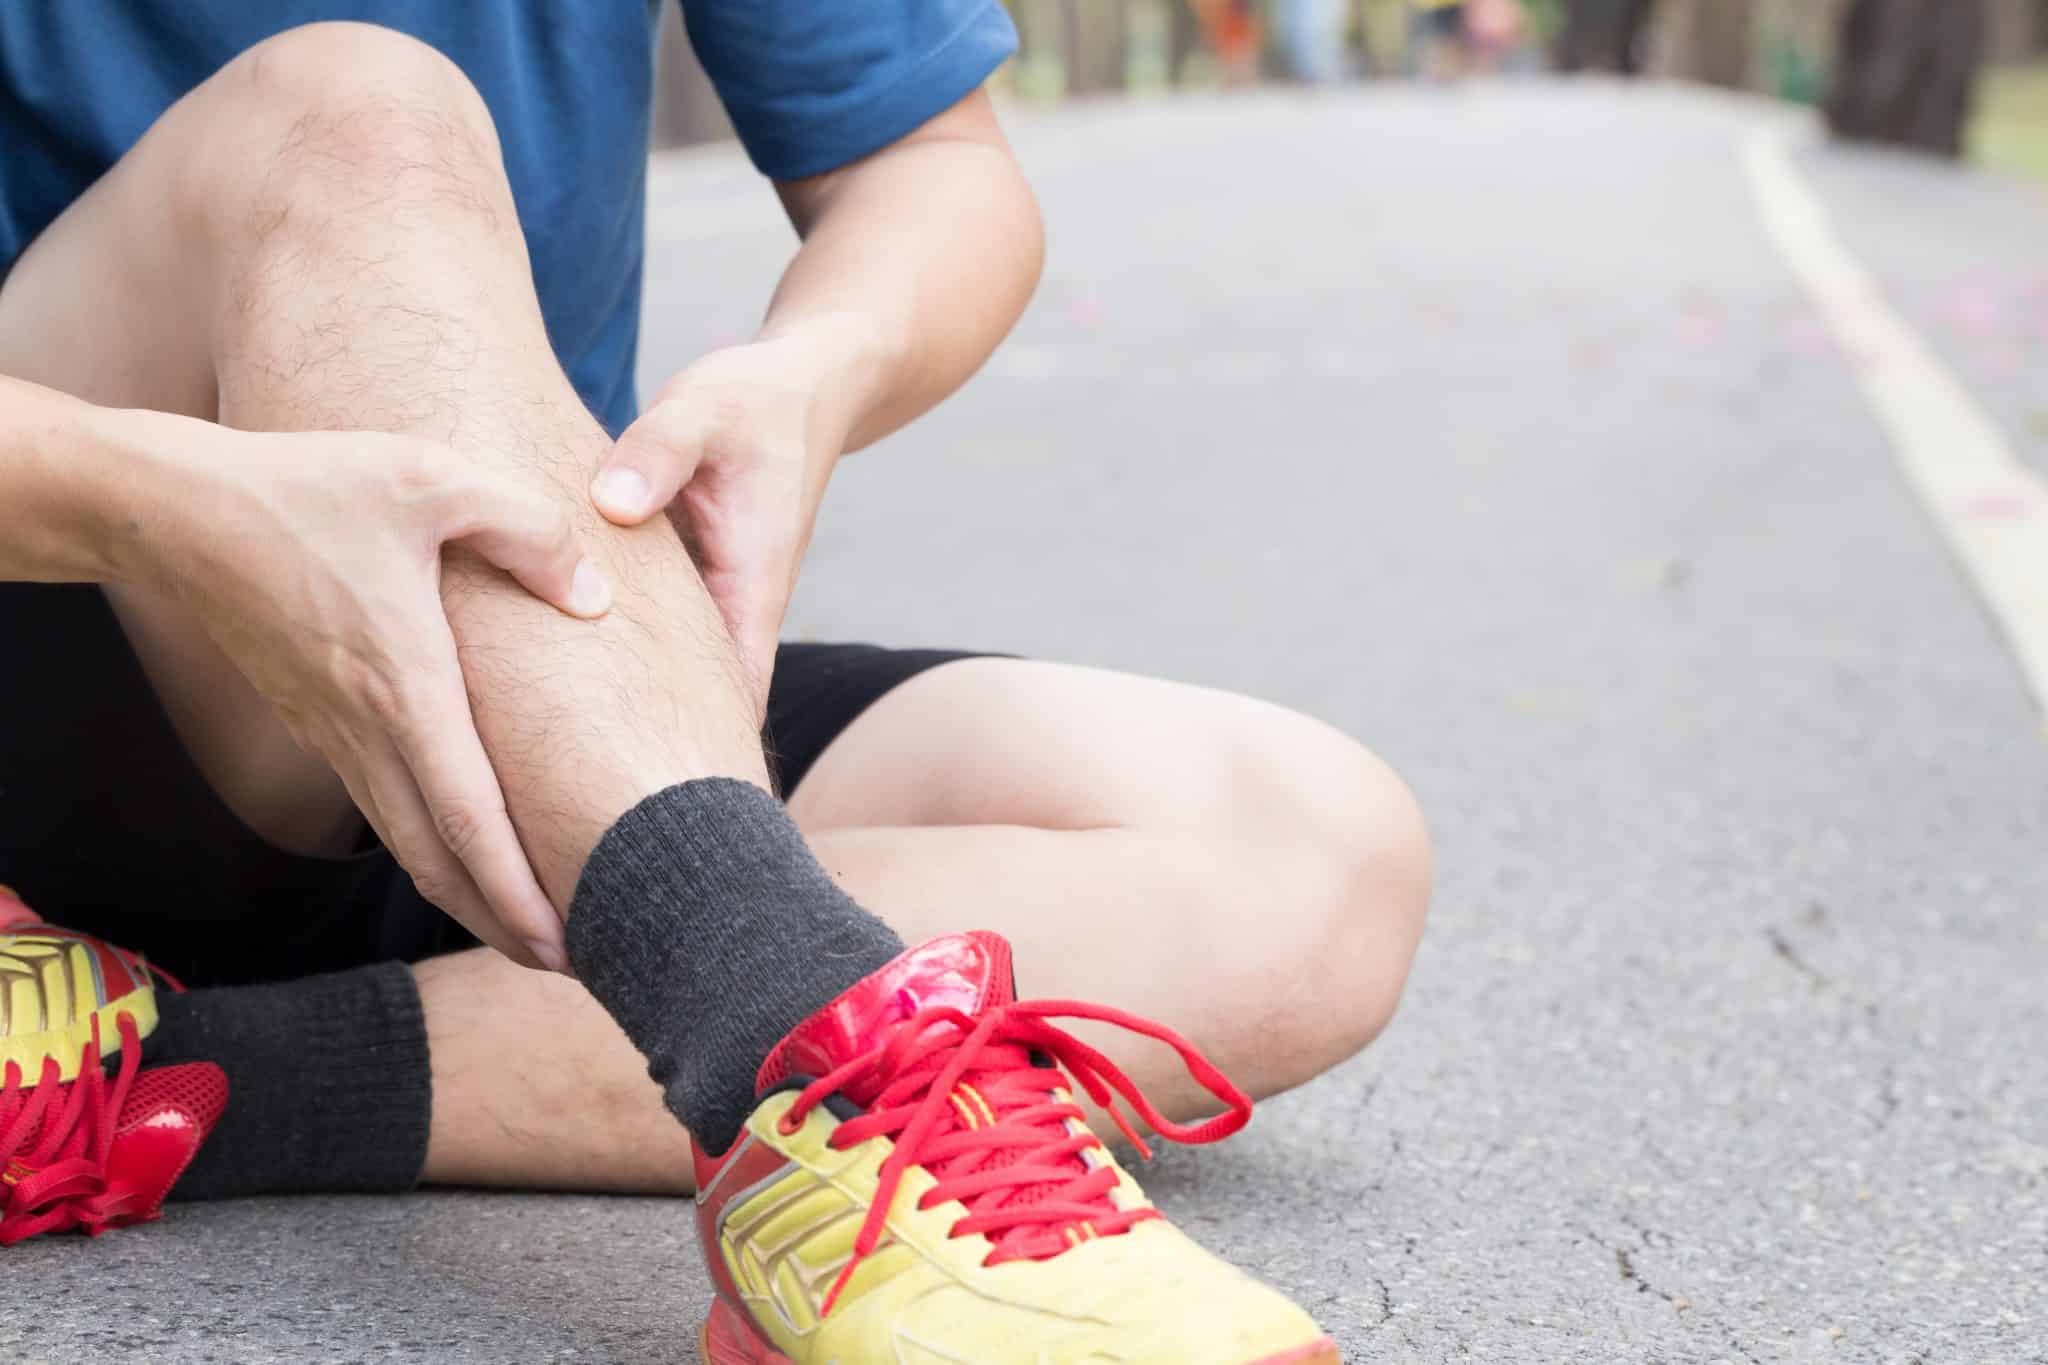 Douleur au tibia: causes et remèdes - Jogging international